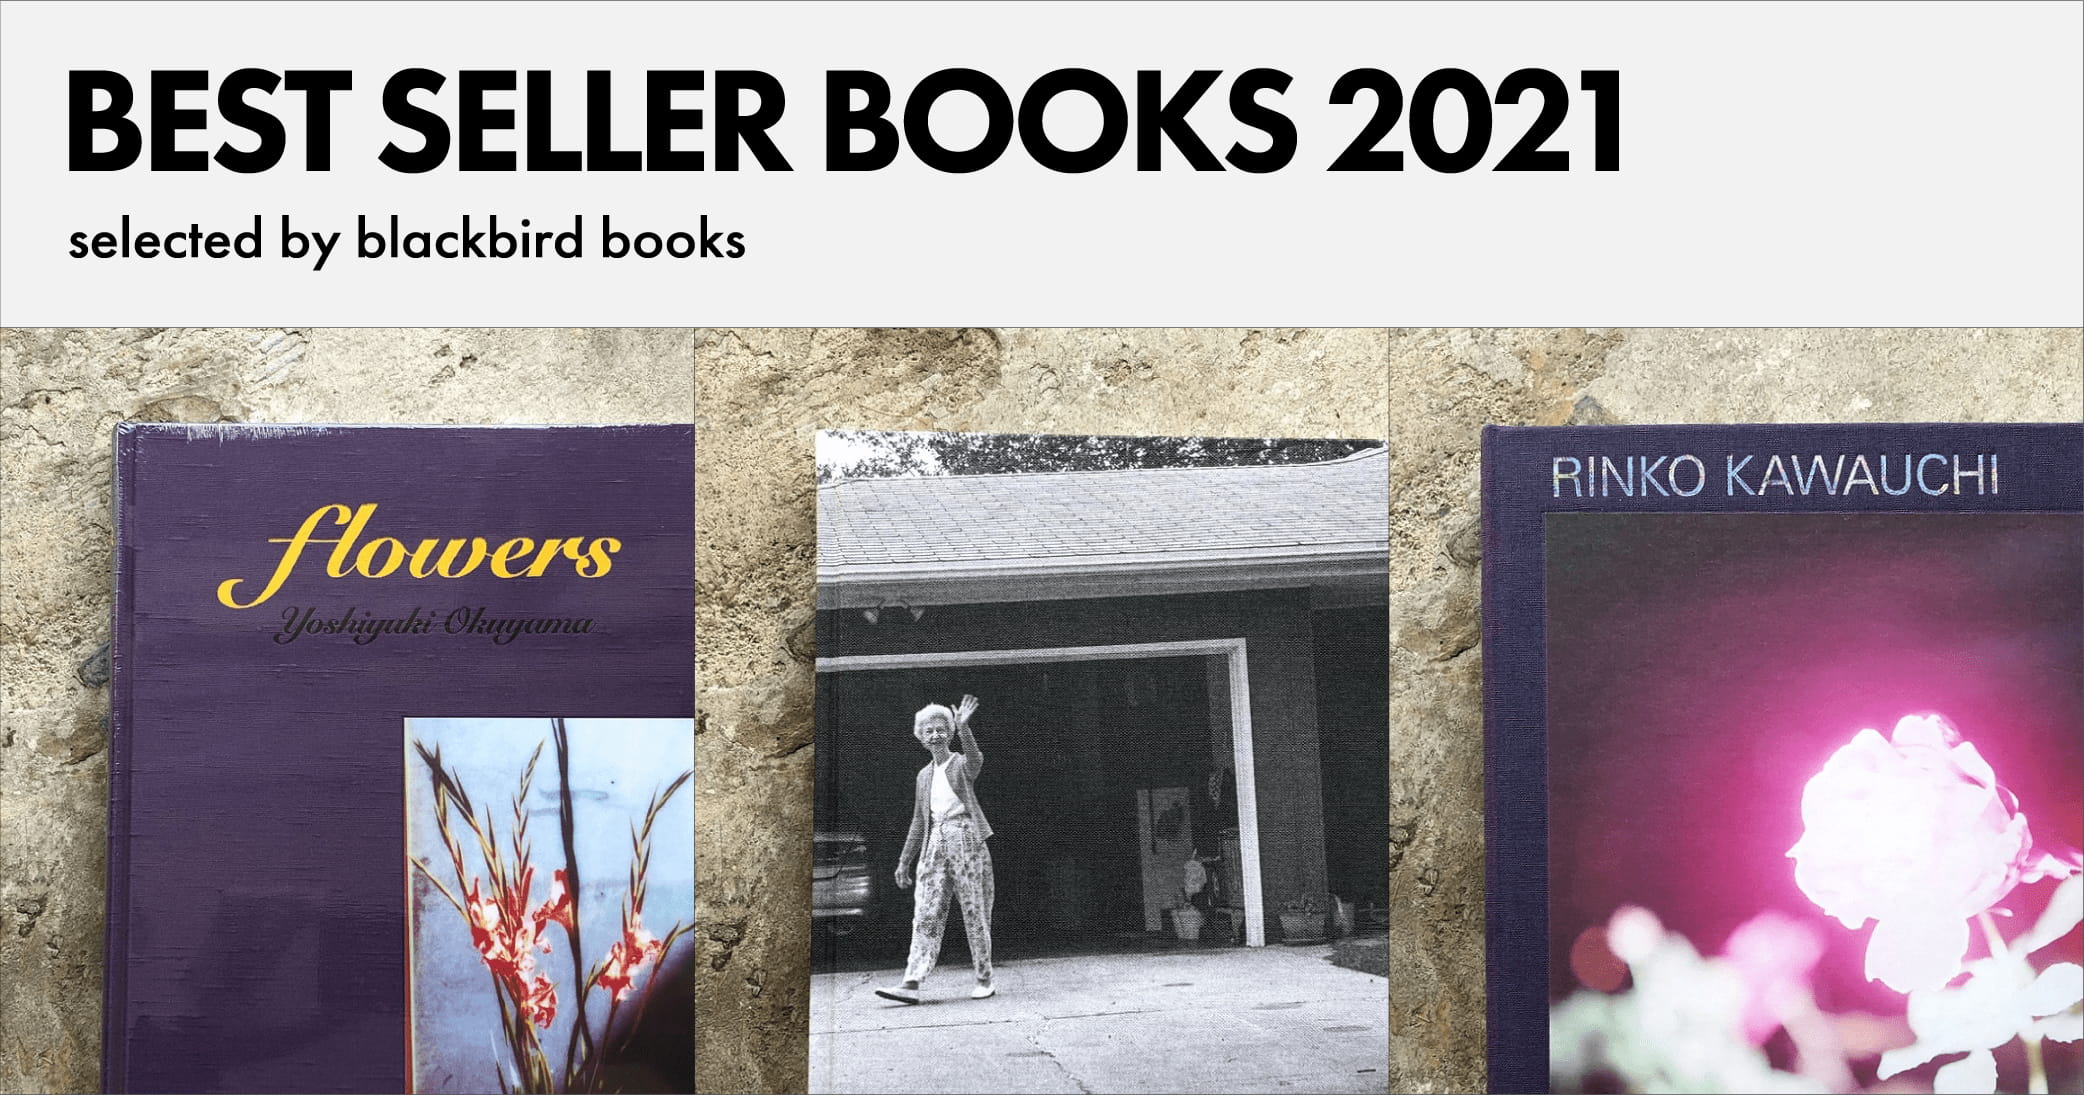 2021年のベストセラー写真集3冊【blackbird books編】 | 2021年のベストセラー写真集3冊【blackbird books編】